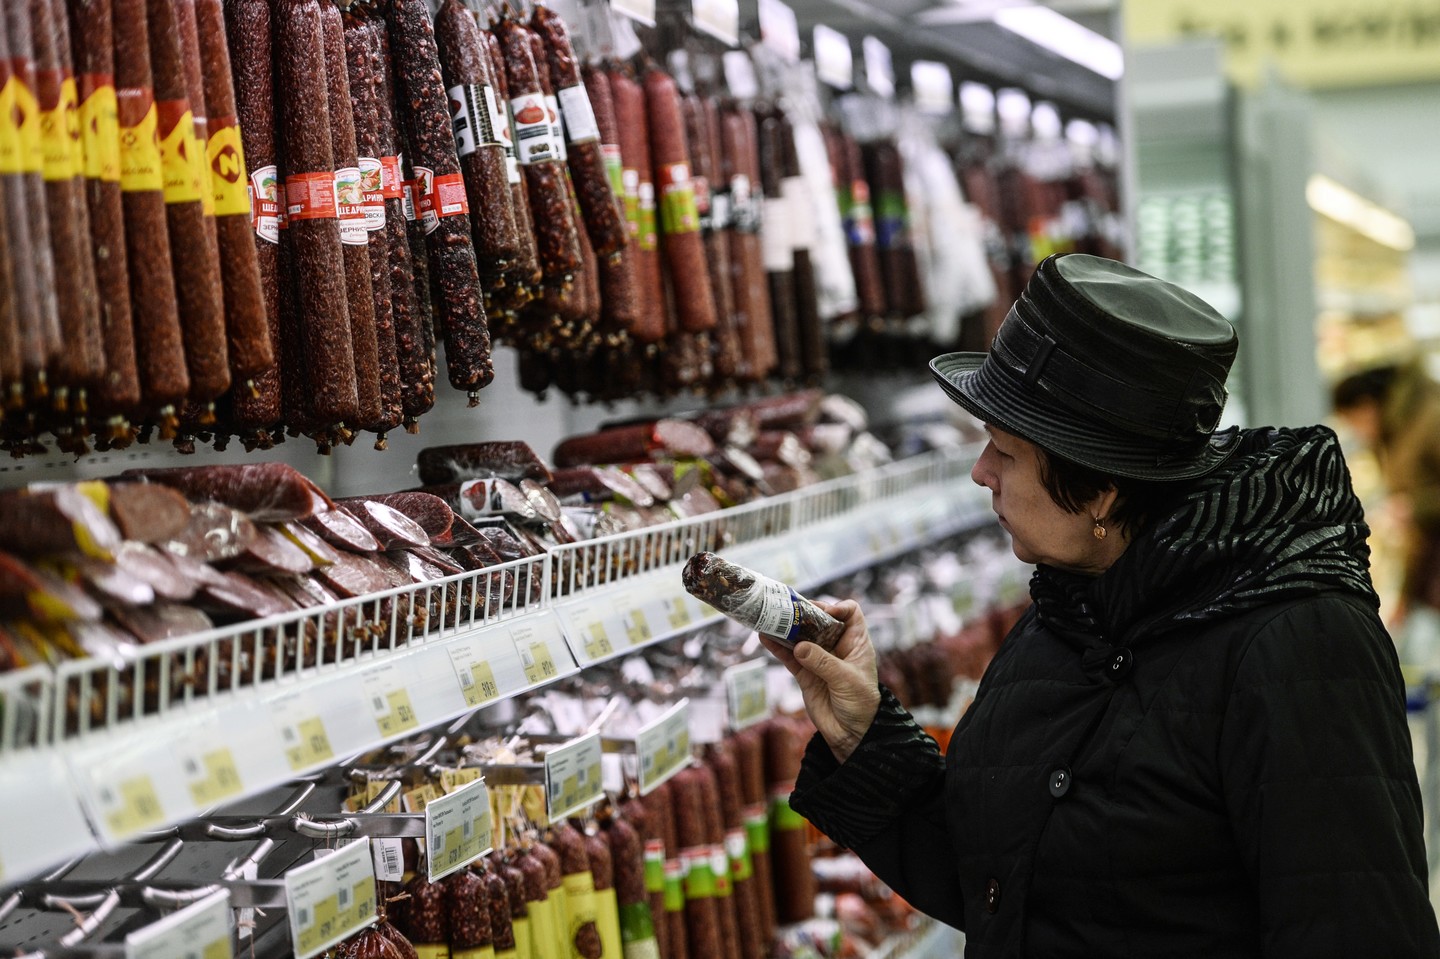 РПЦ поддержала идею запрета работы супермаркетов в воскресенье